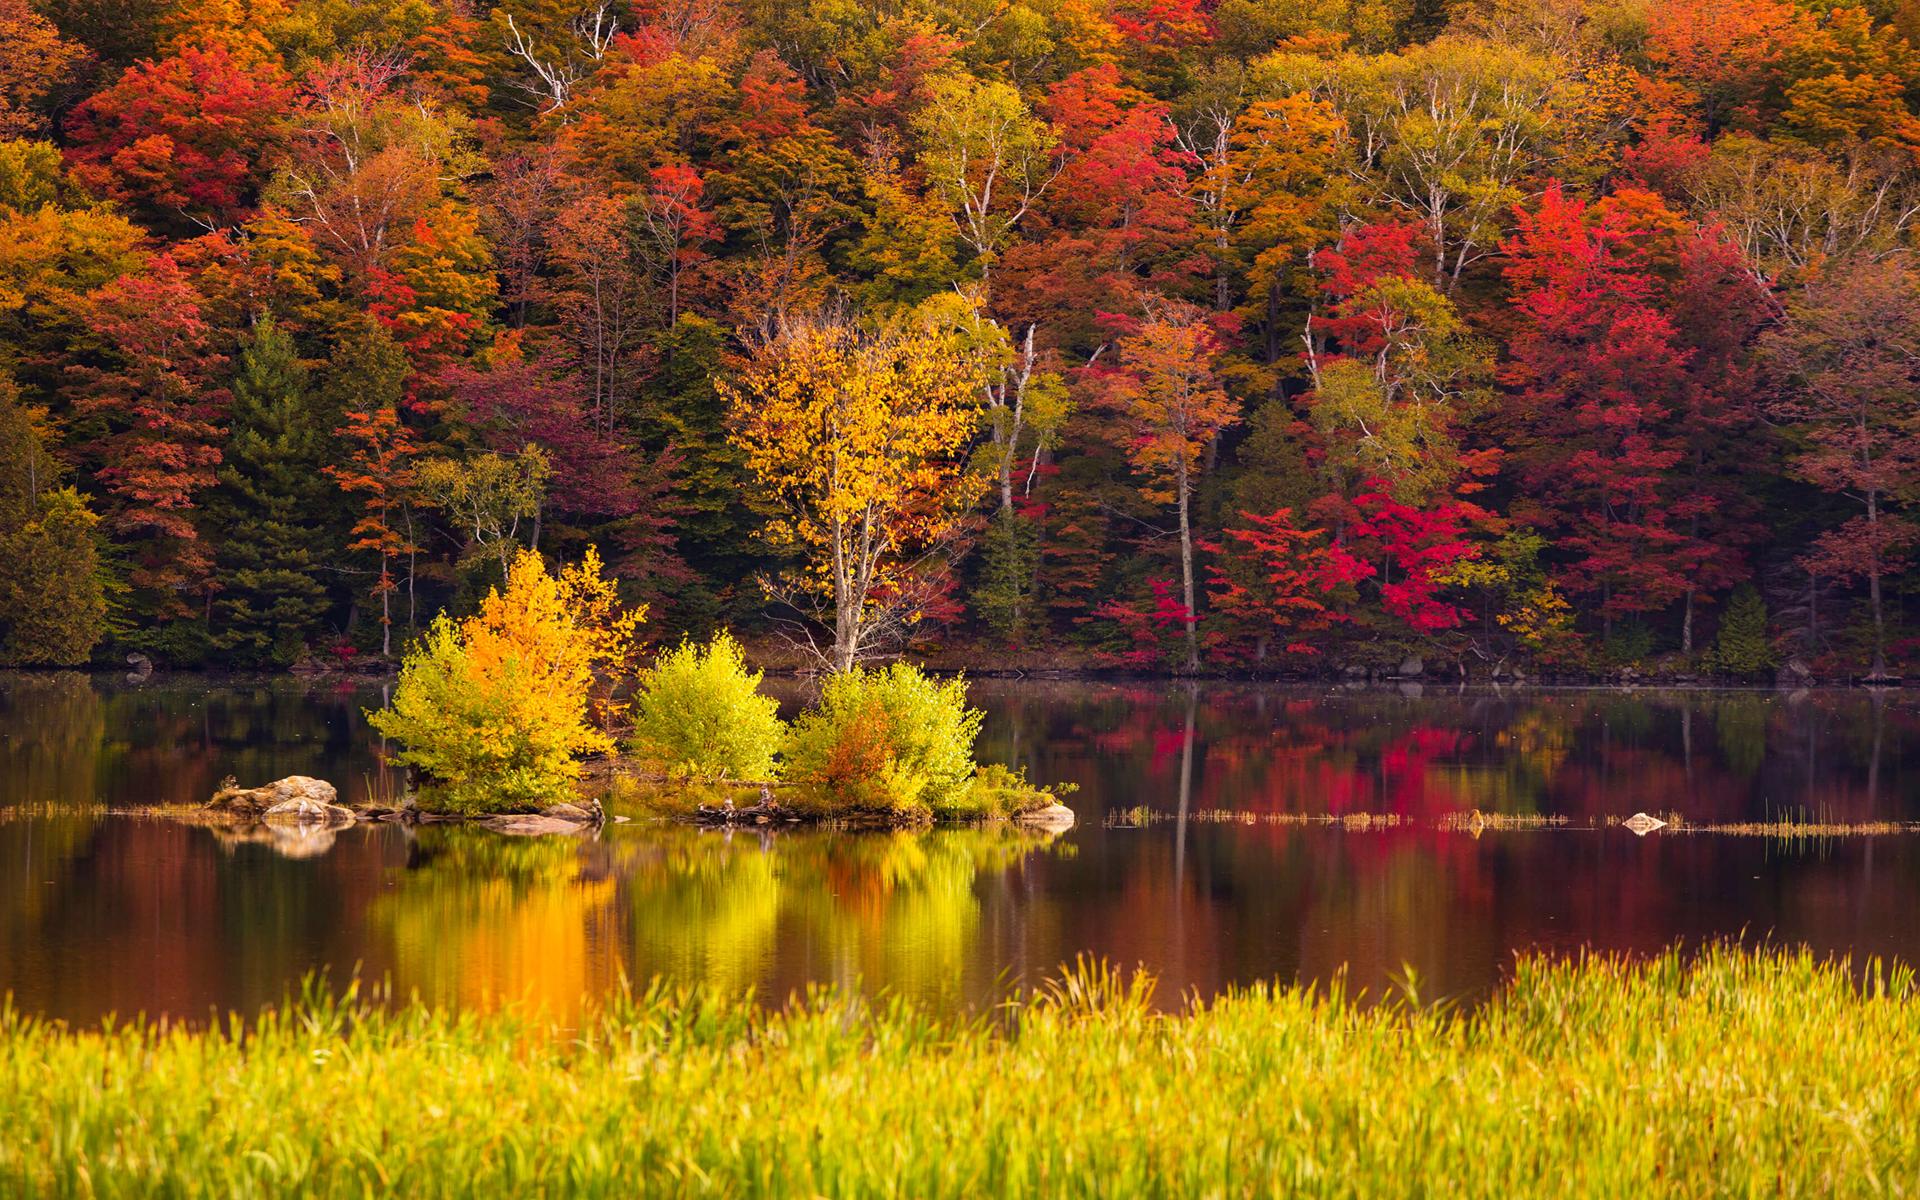 壁纸1280×1024森林里的秋天 色彩绚丽的森林图片壁纸,秋色无限-森林里的秋天壁纸壁纸图片-风景壁纸-风景图片素材-桌面壁纸